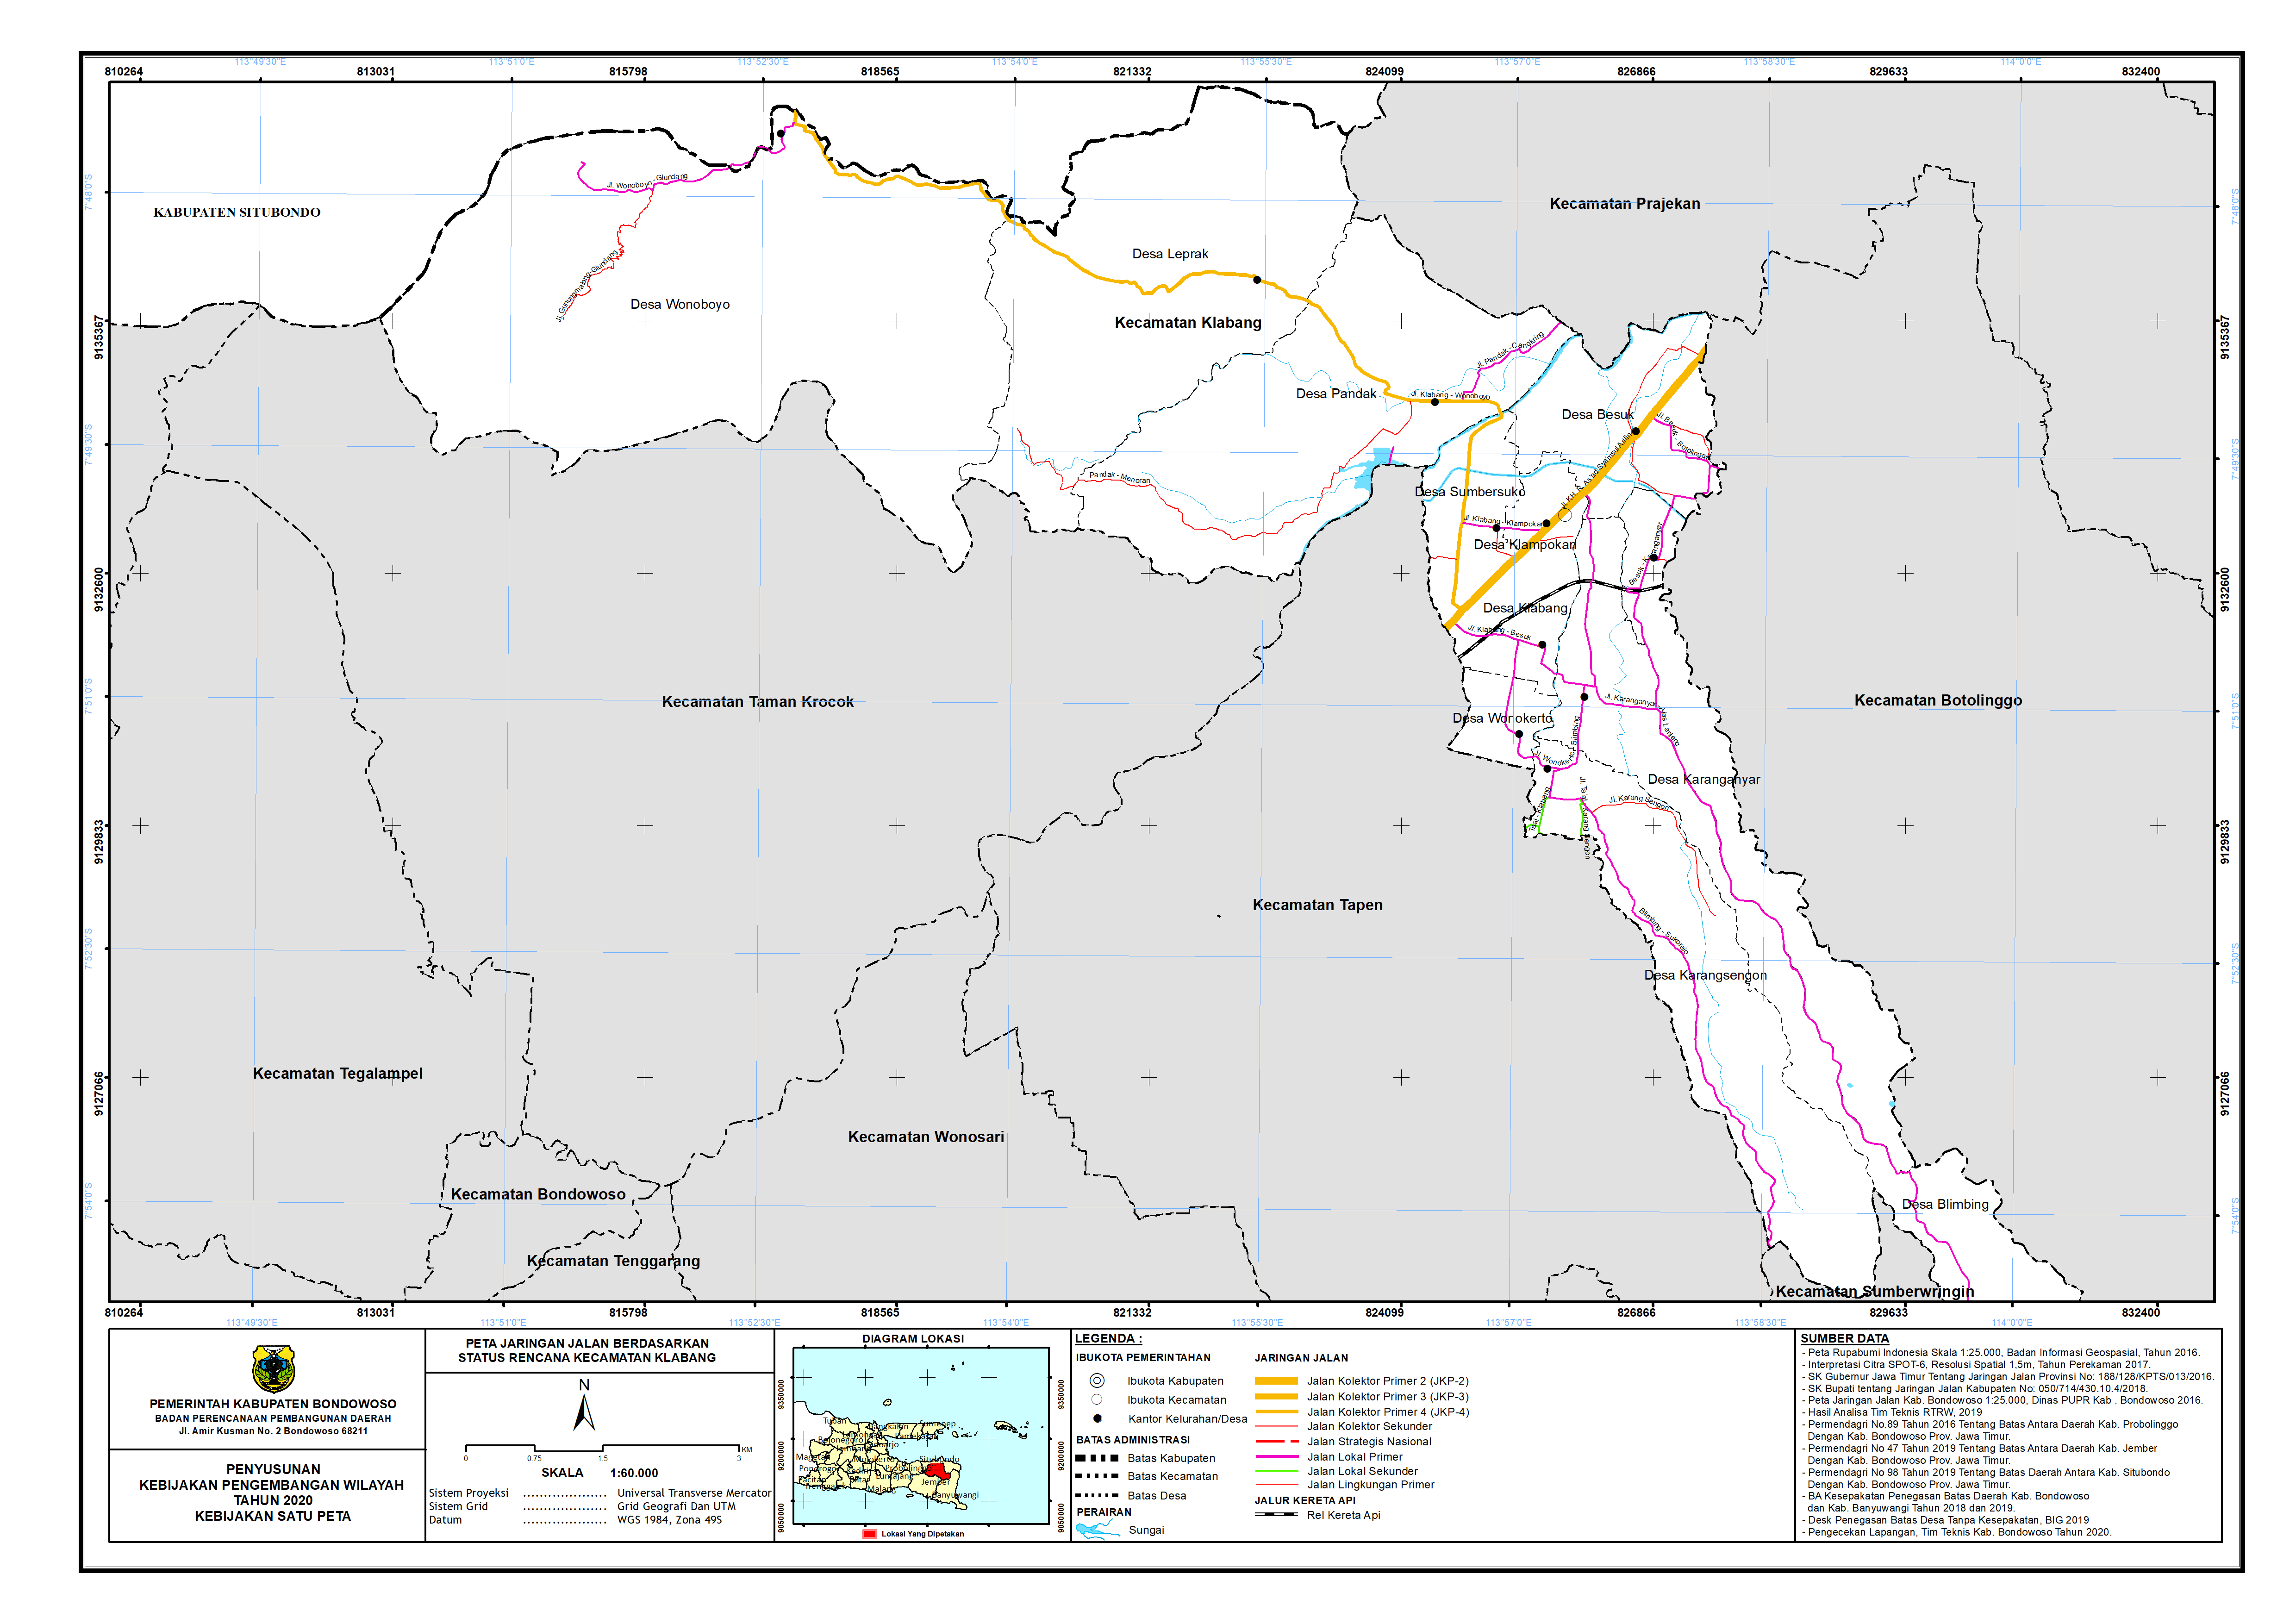 Peta Jaringan Jalan Berdasarkan Status Rencana Kecamatan Klabang.png